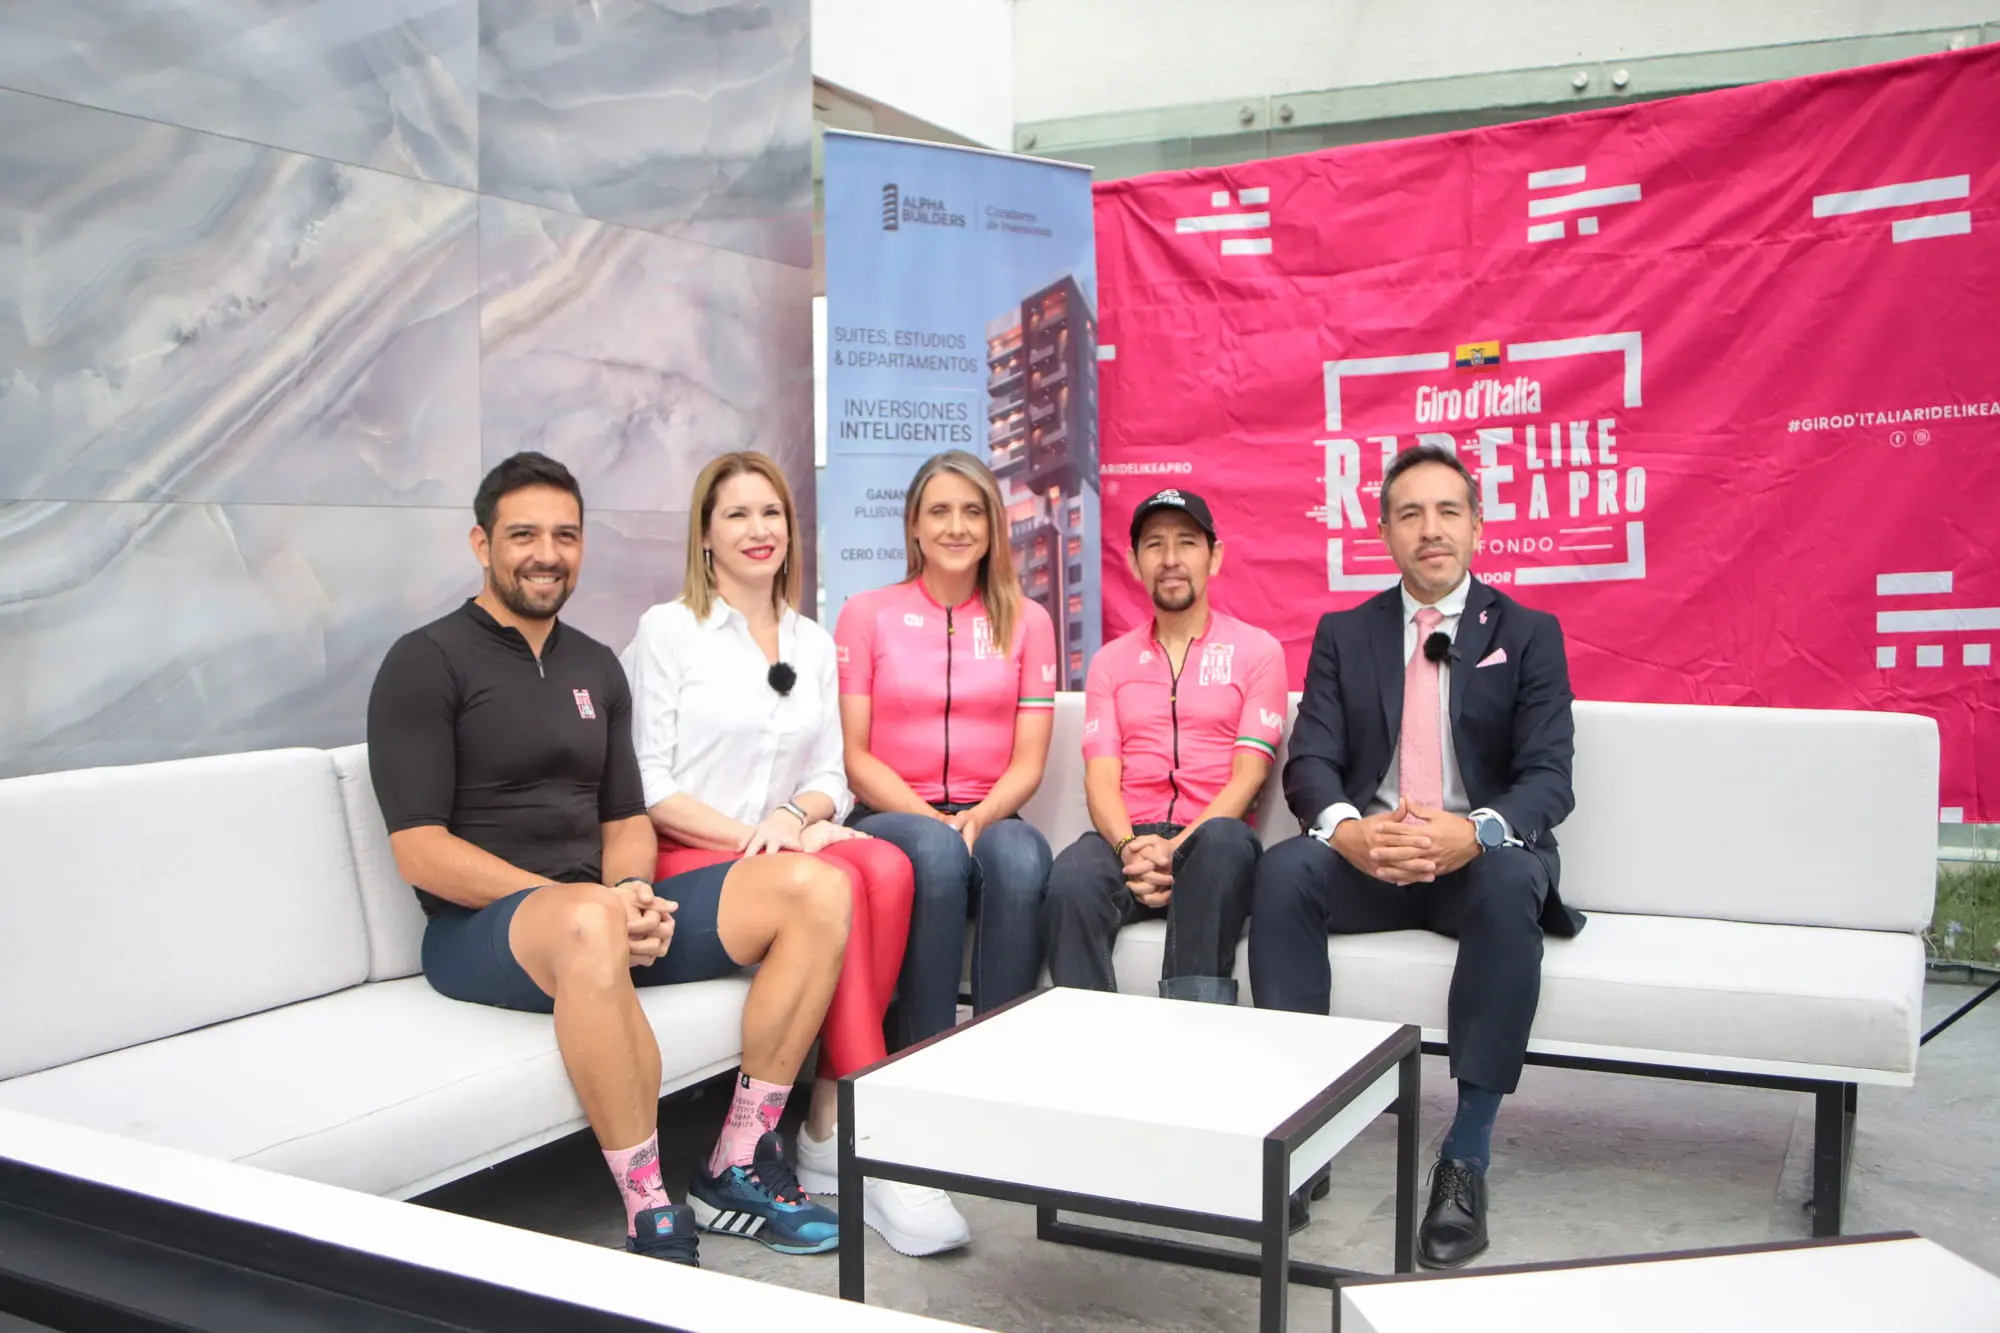 Ecuador epicentro del ciclismo: Giro D’Italia vuelve a Quito con su “maglia rosa”